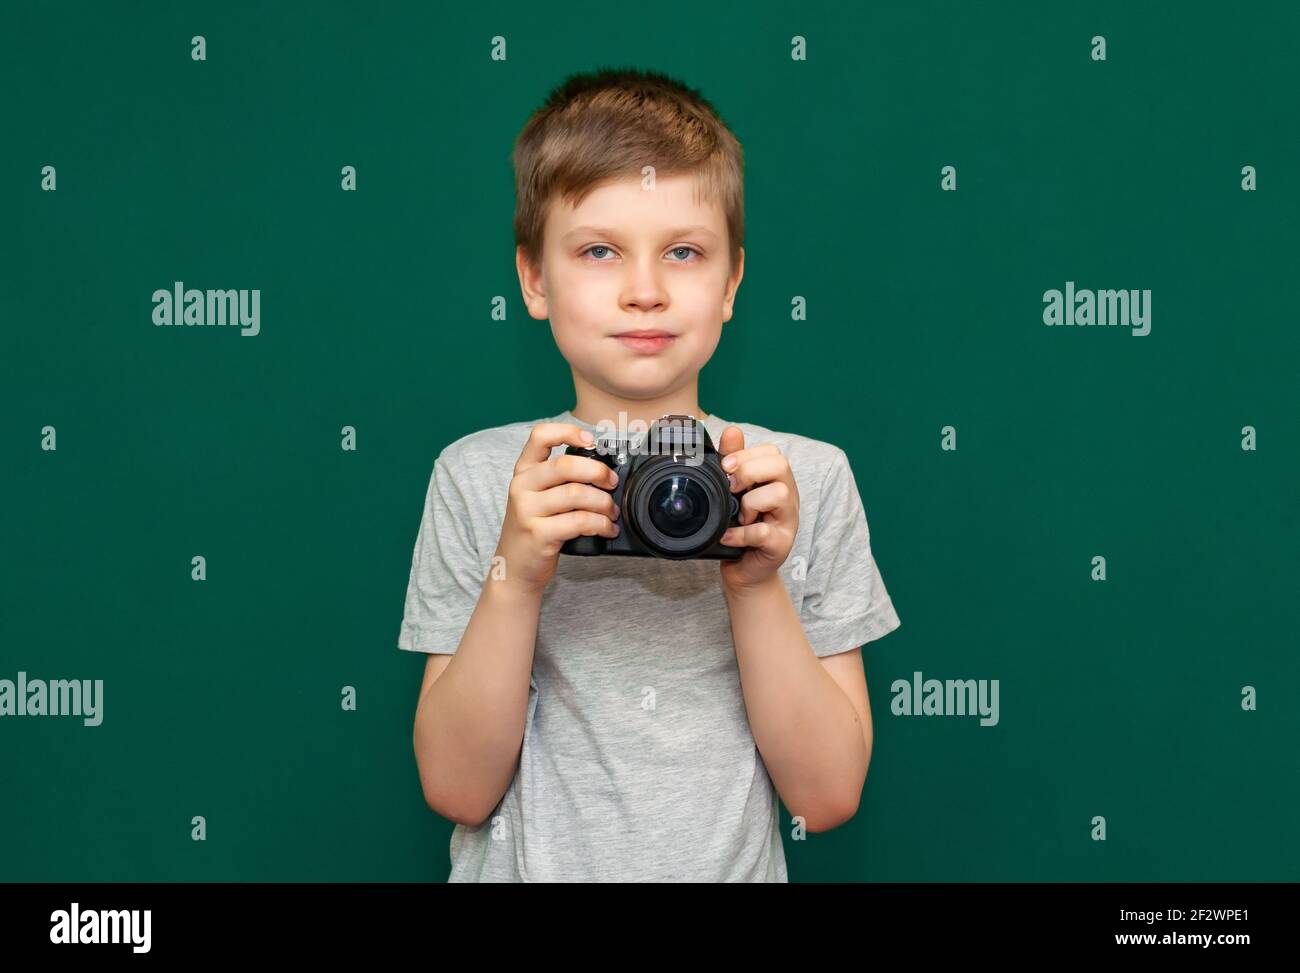 Junge Kind mit einer Kamera in den Händen Stockfoto